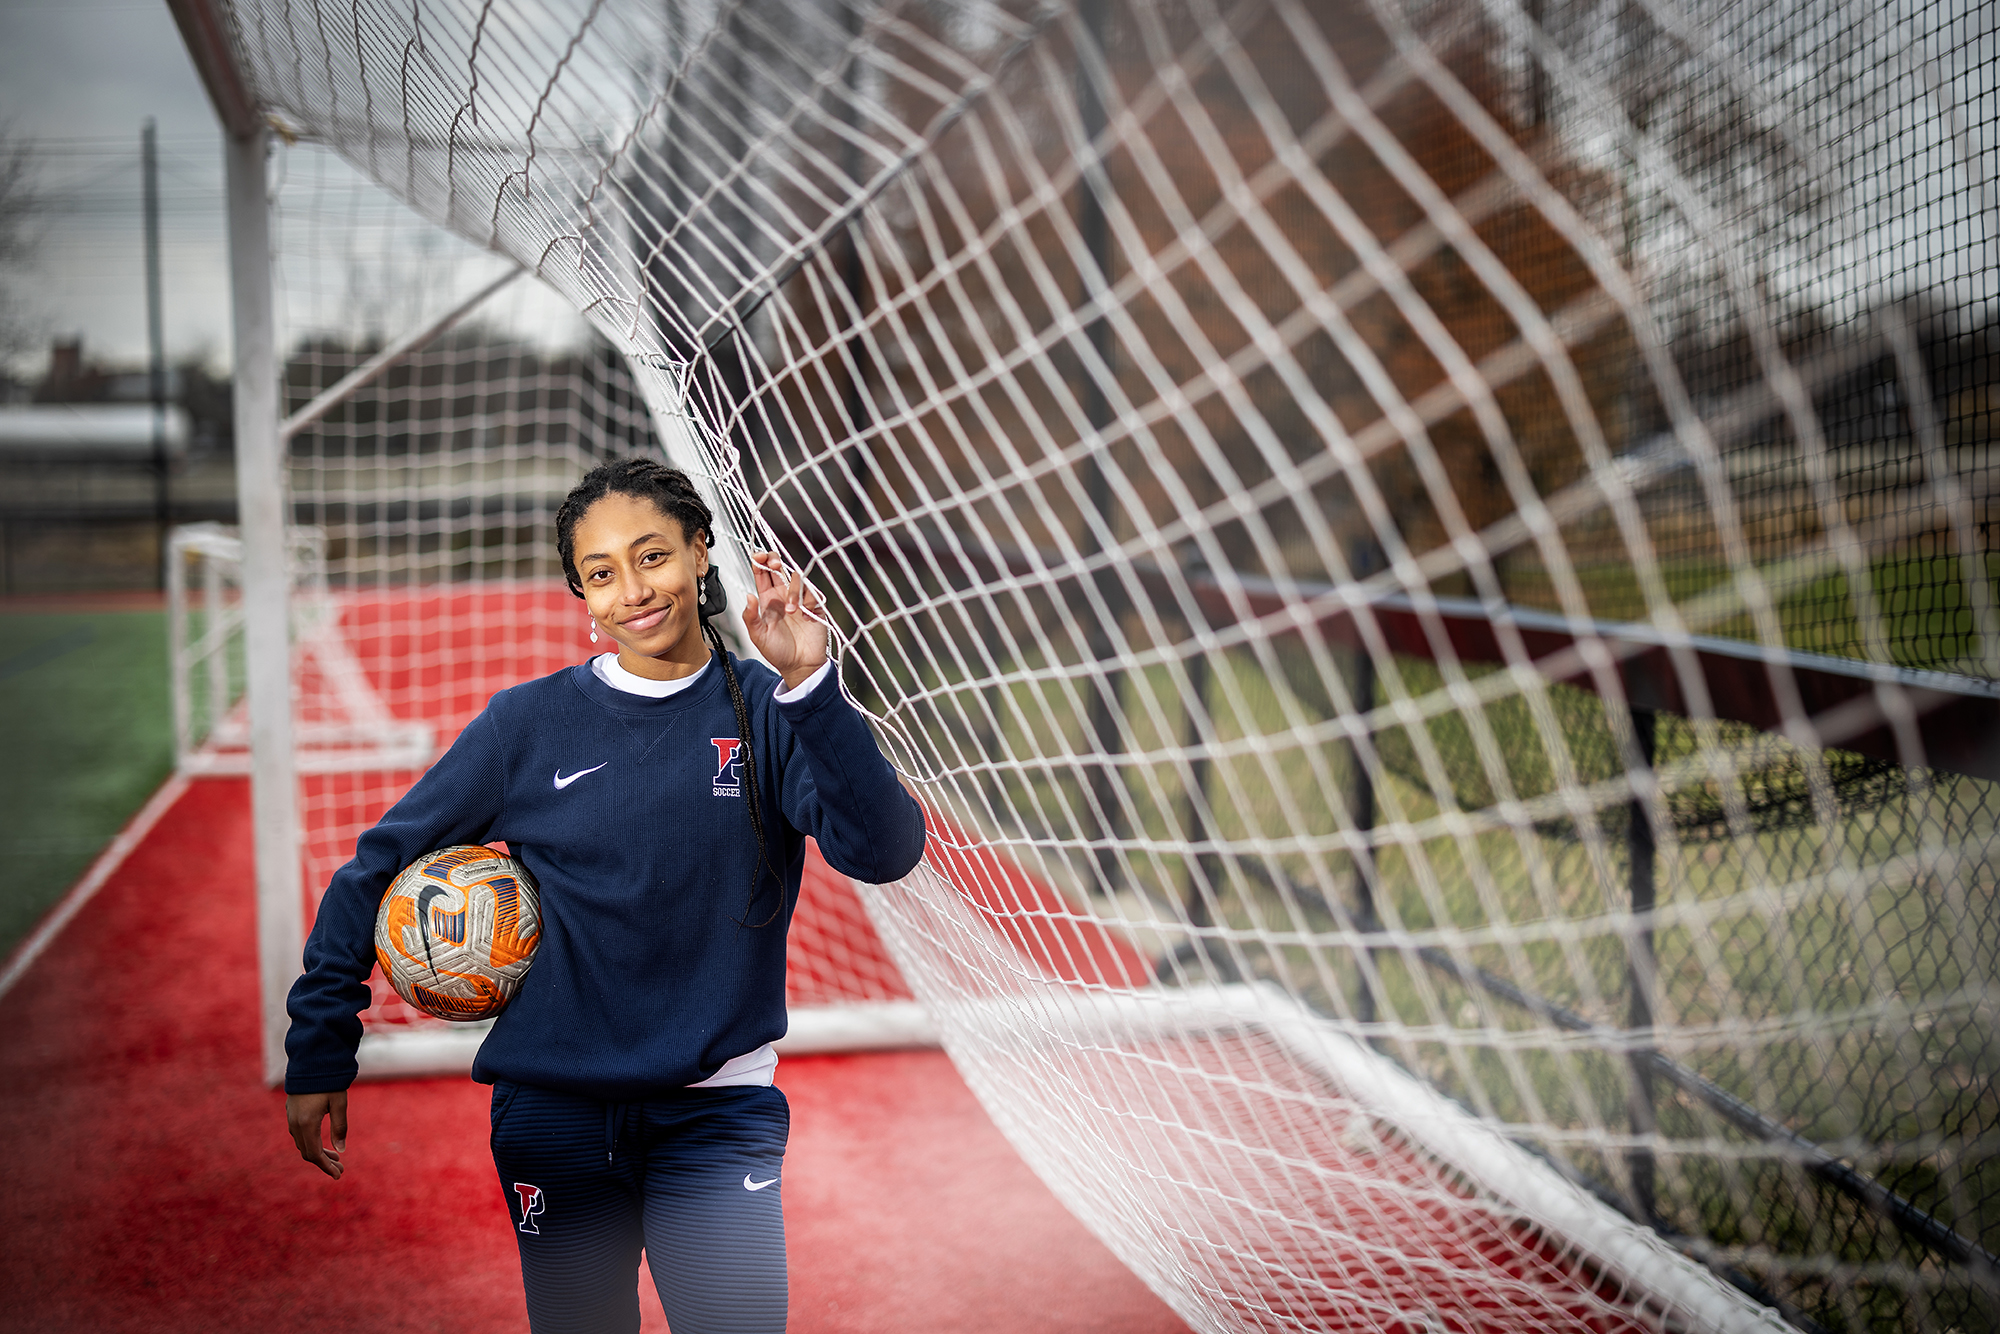 Ginger Fontenot, wearing a Penn sweatsuit, holds a soccer ball inside a goal at Penn Park.